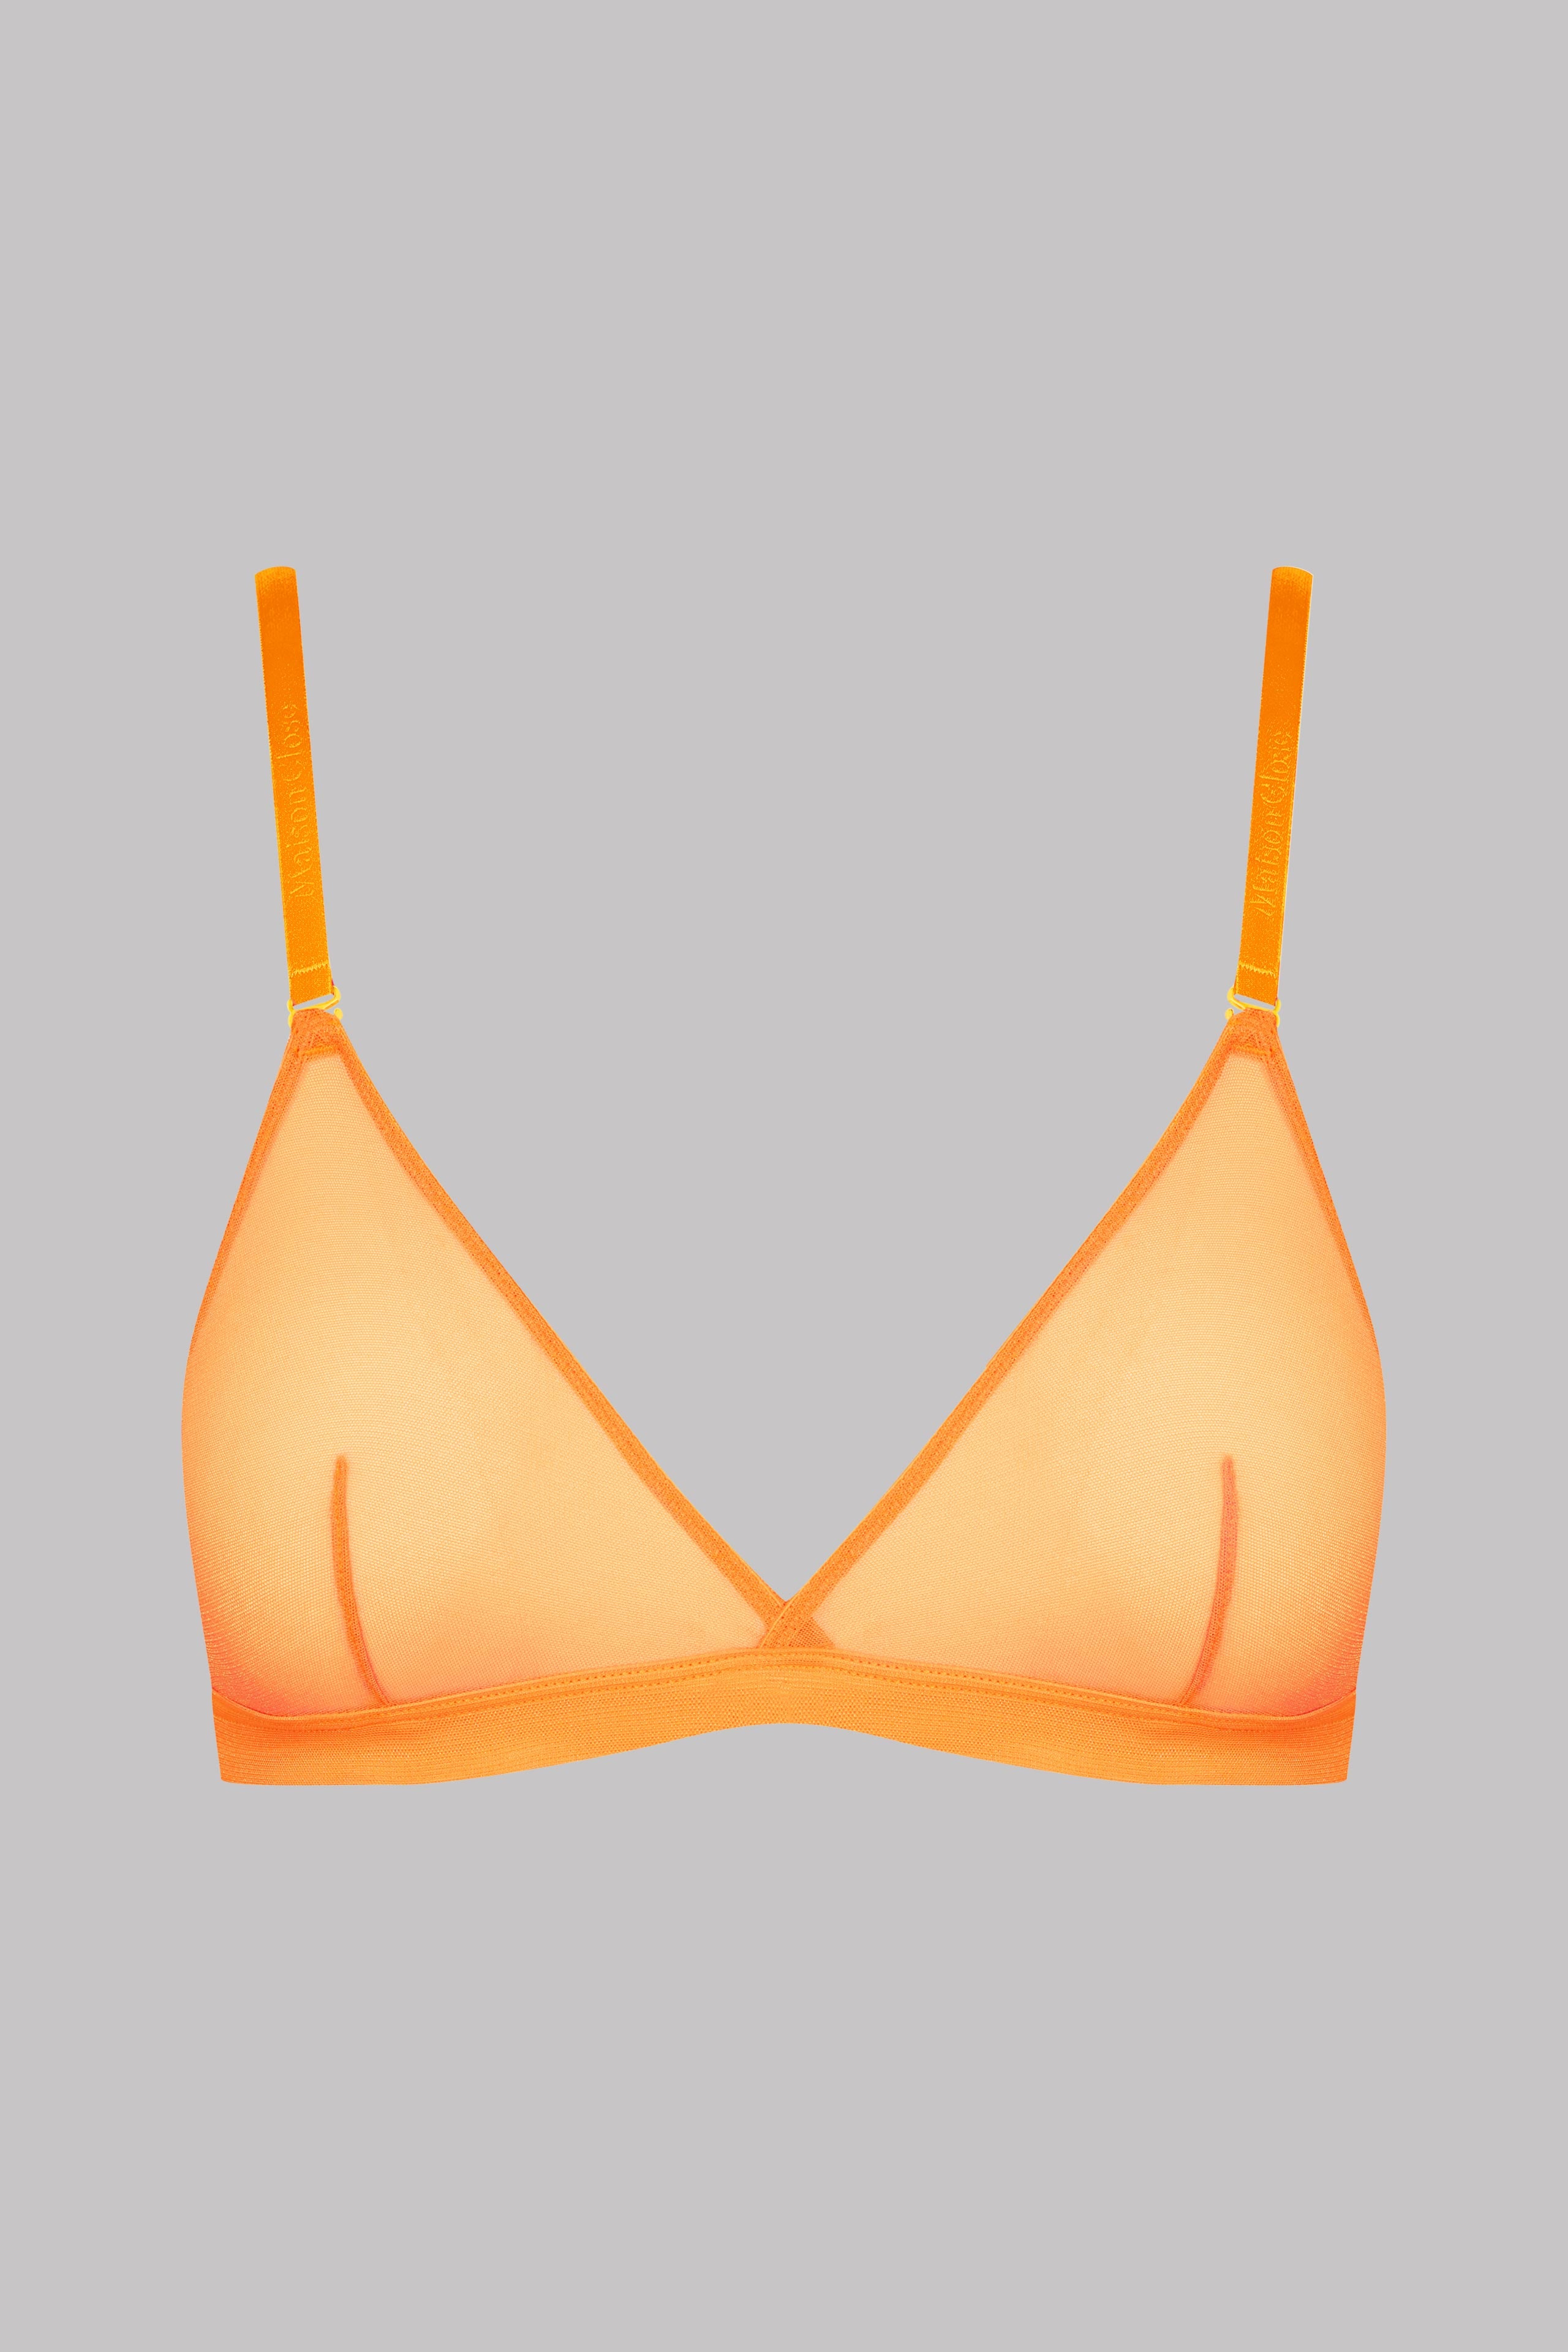 Iridescent orange stripe triangle bra, Everyday Sunday